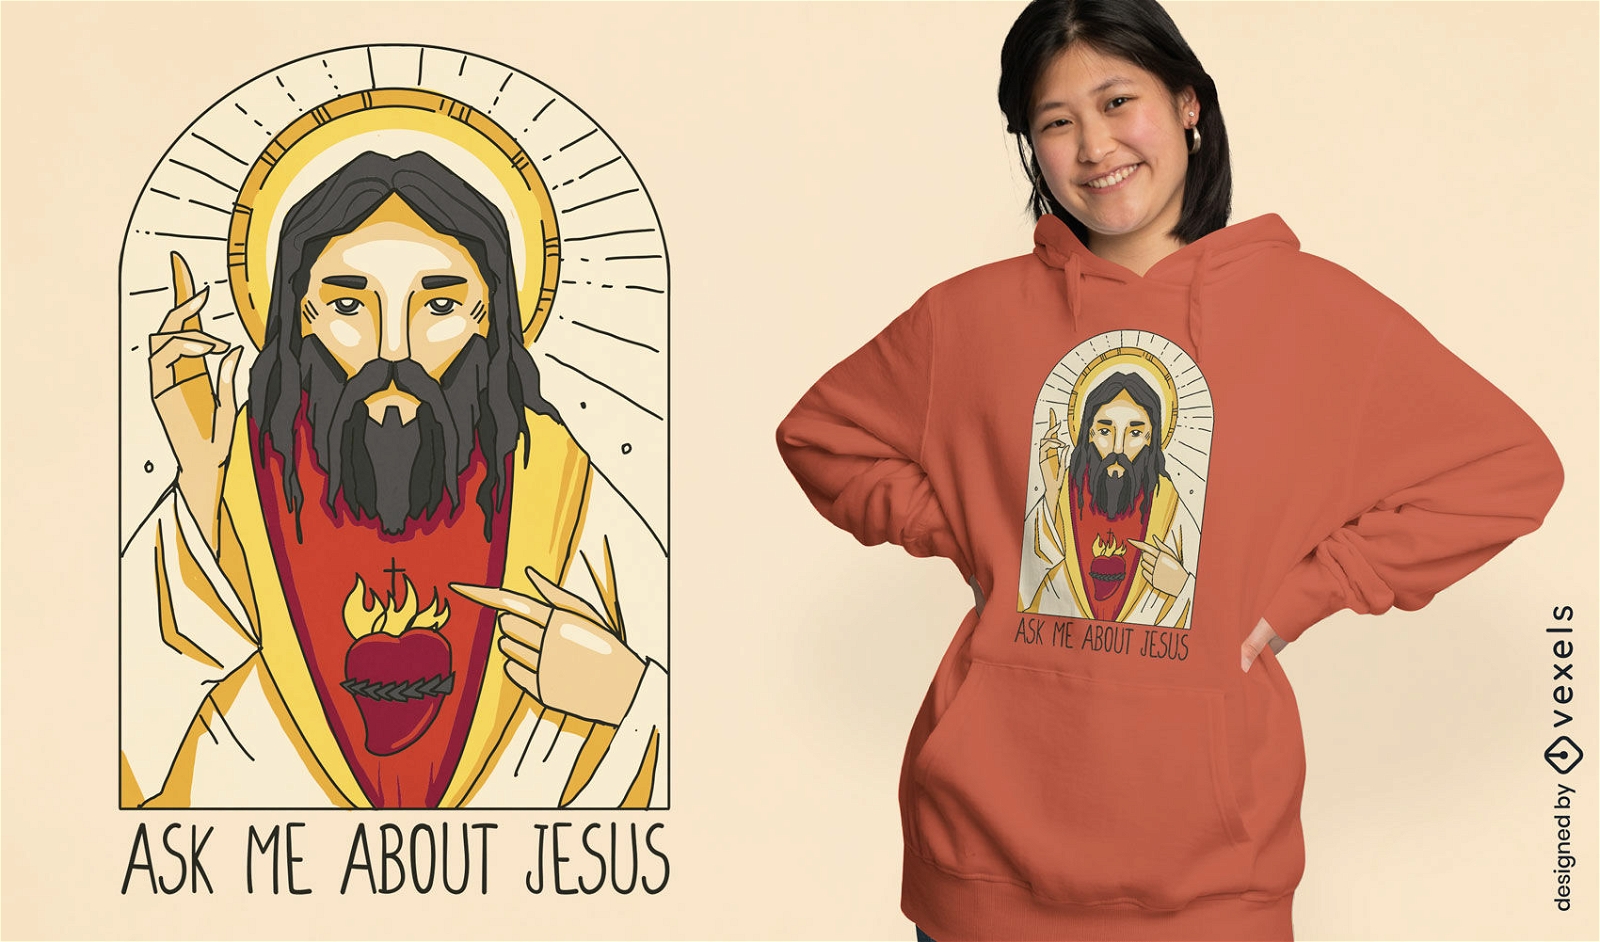 Jesus religious image t-shirt design